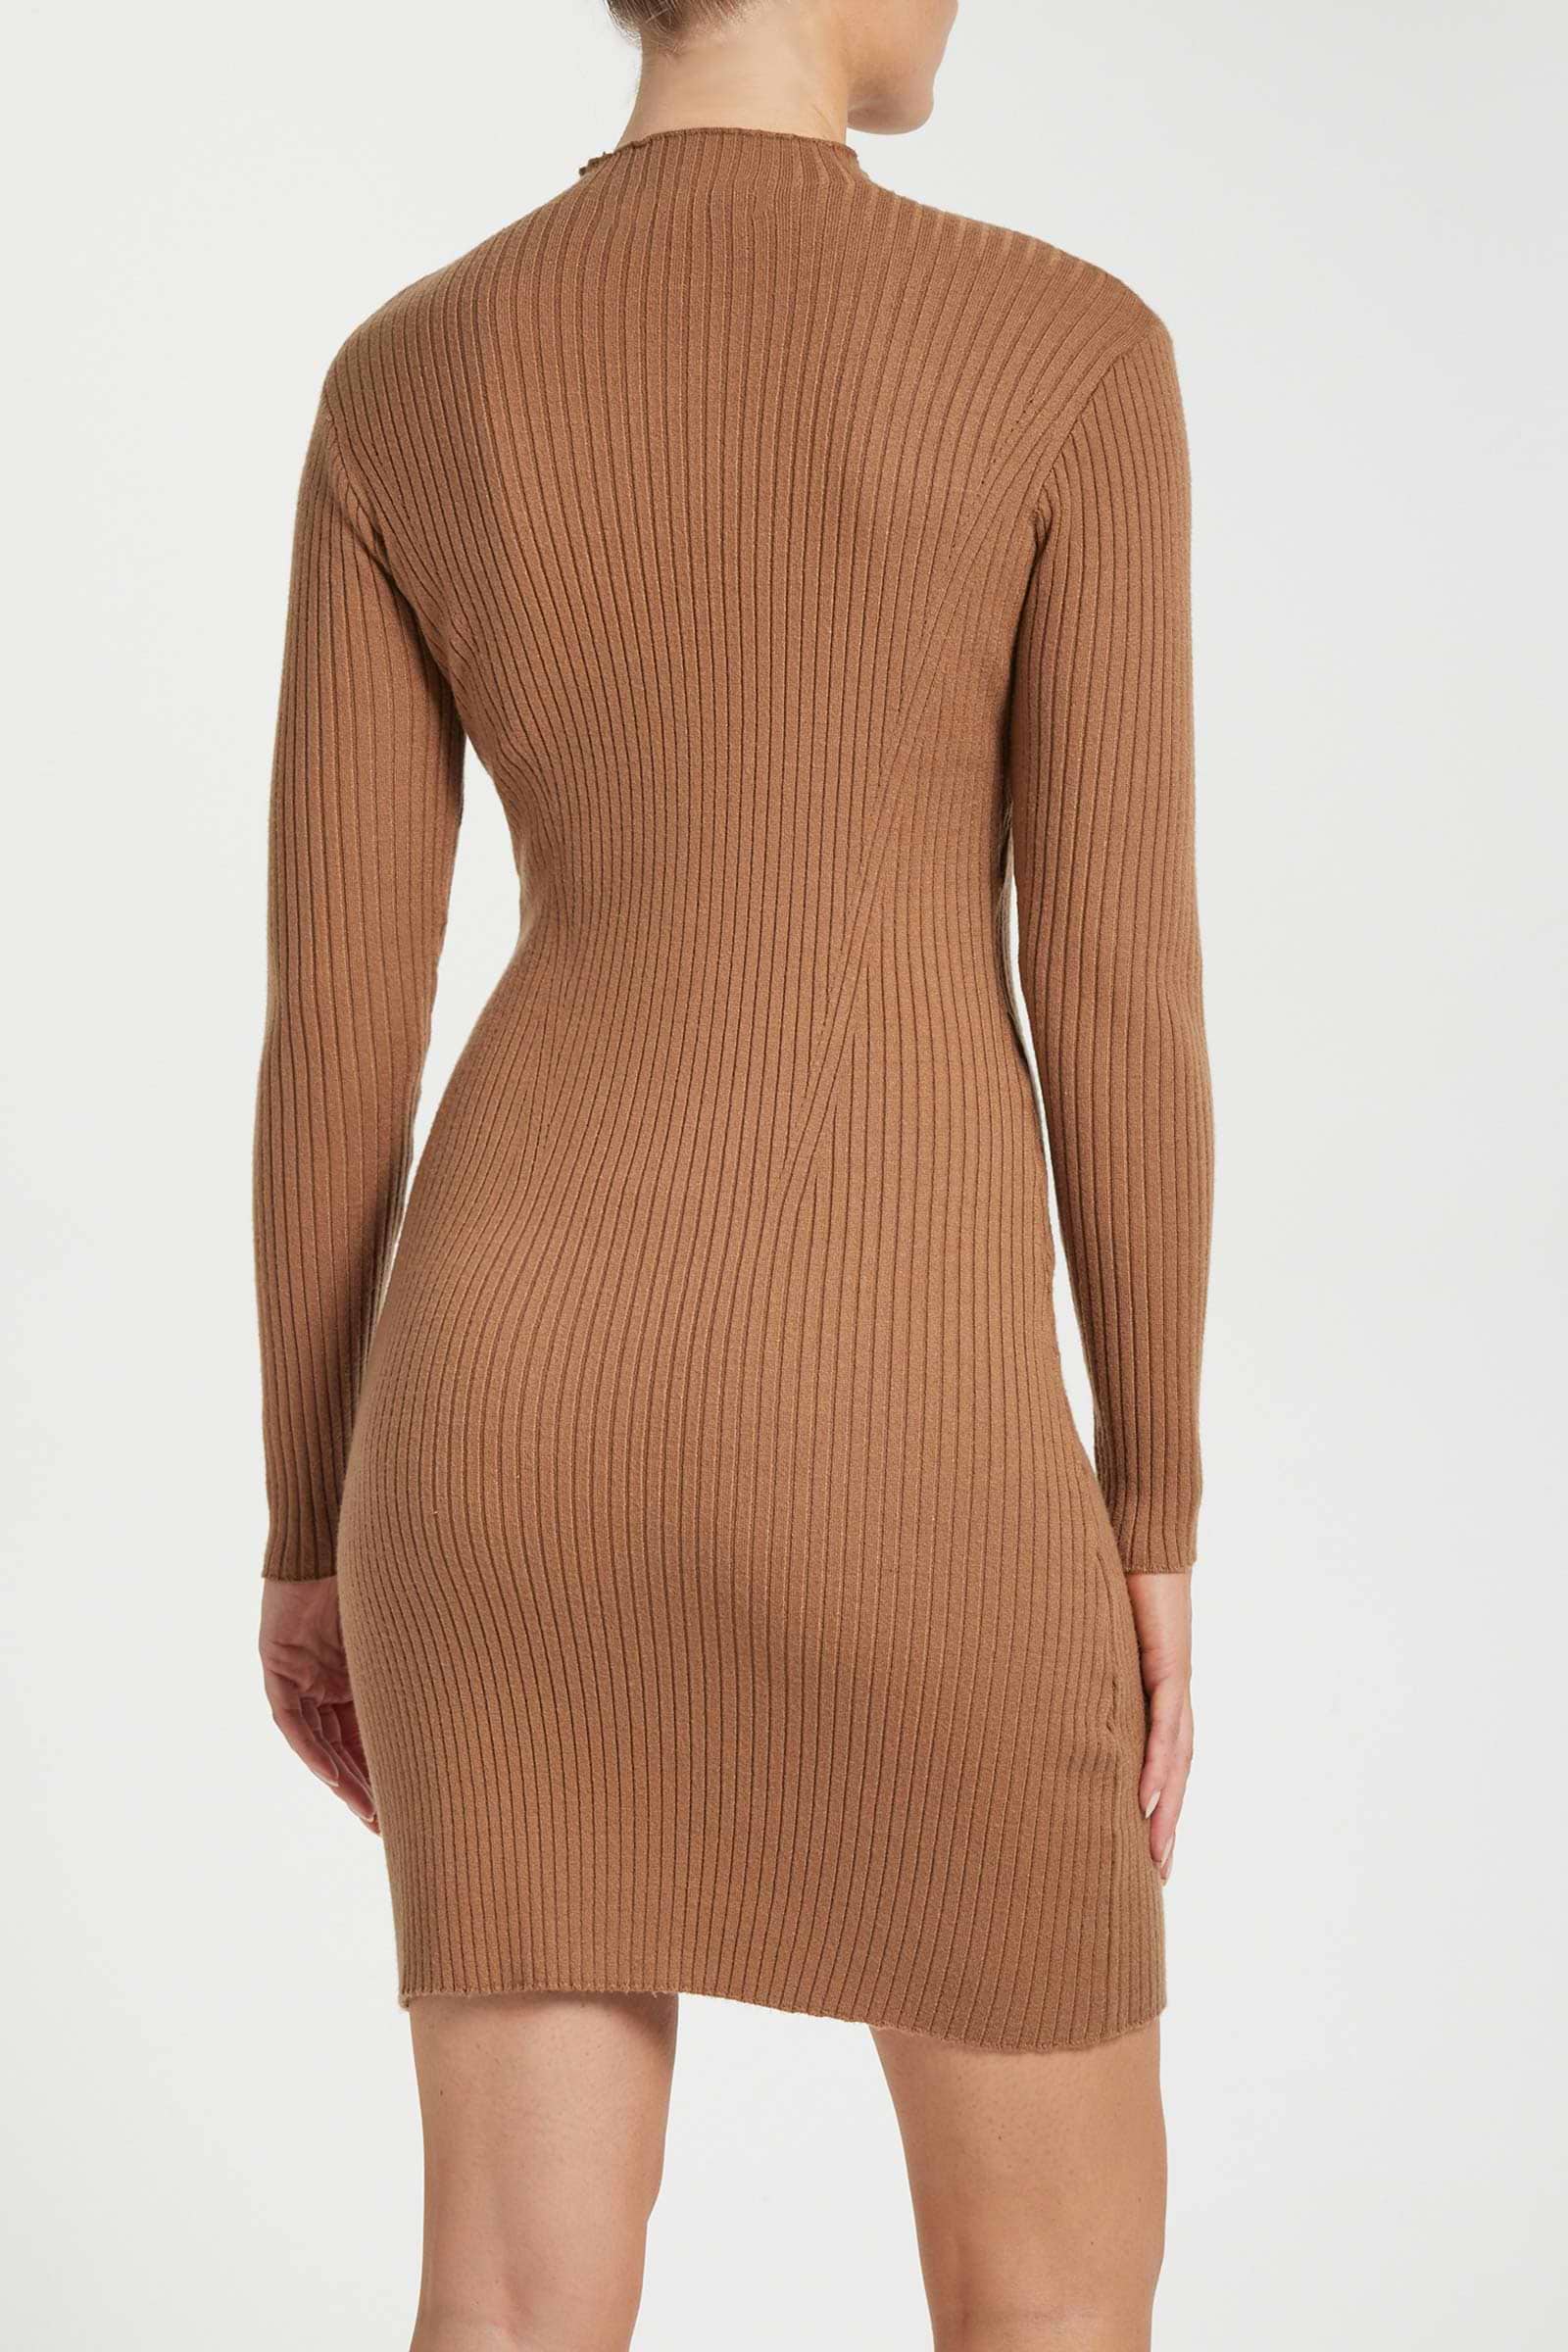 Samara Sweater Dress